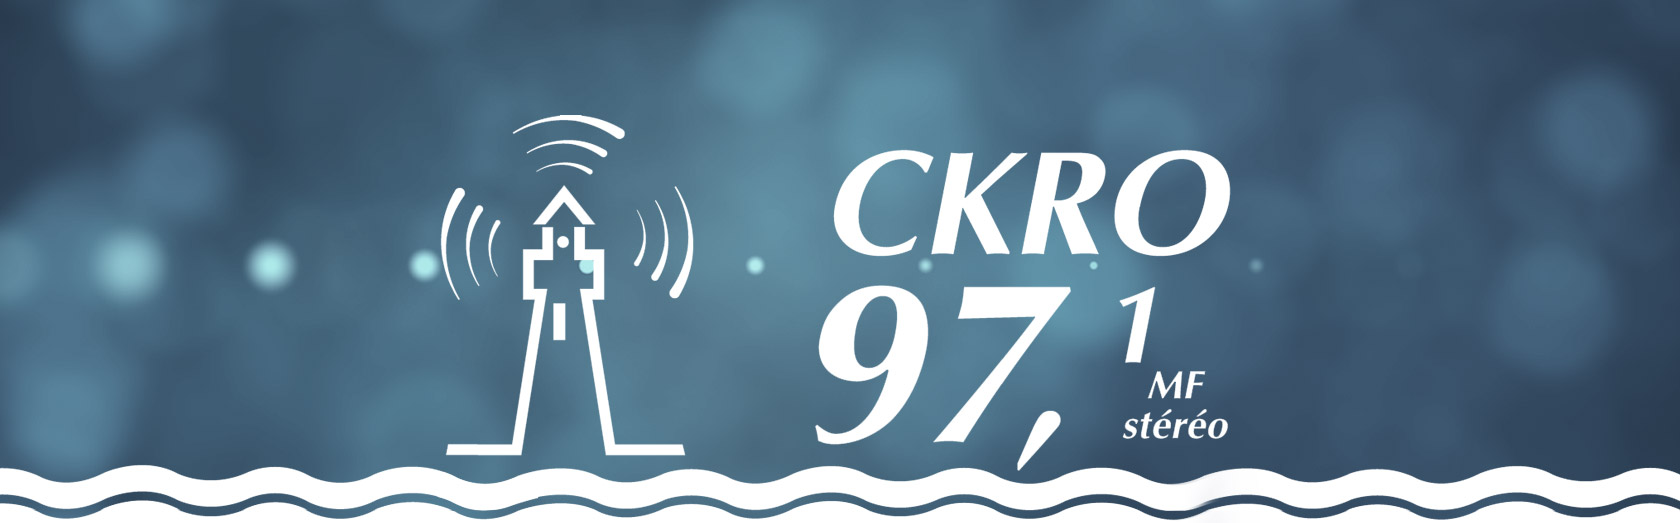 Le logo de CKRO FM 97,1 - La radio au coeur de la péninsule